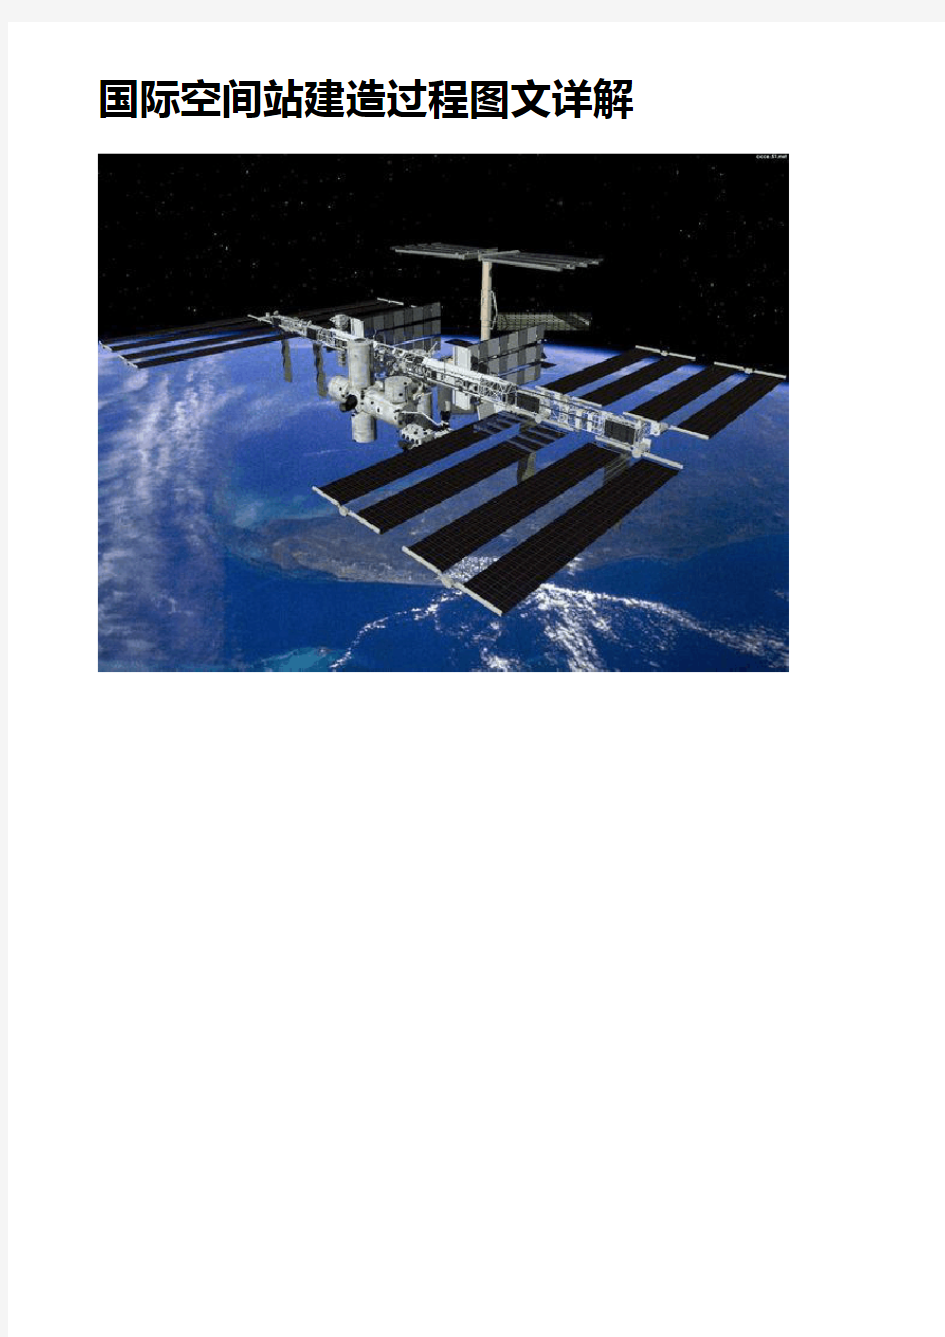 国际空间站 ISS 建设历程